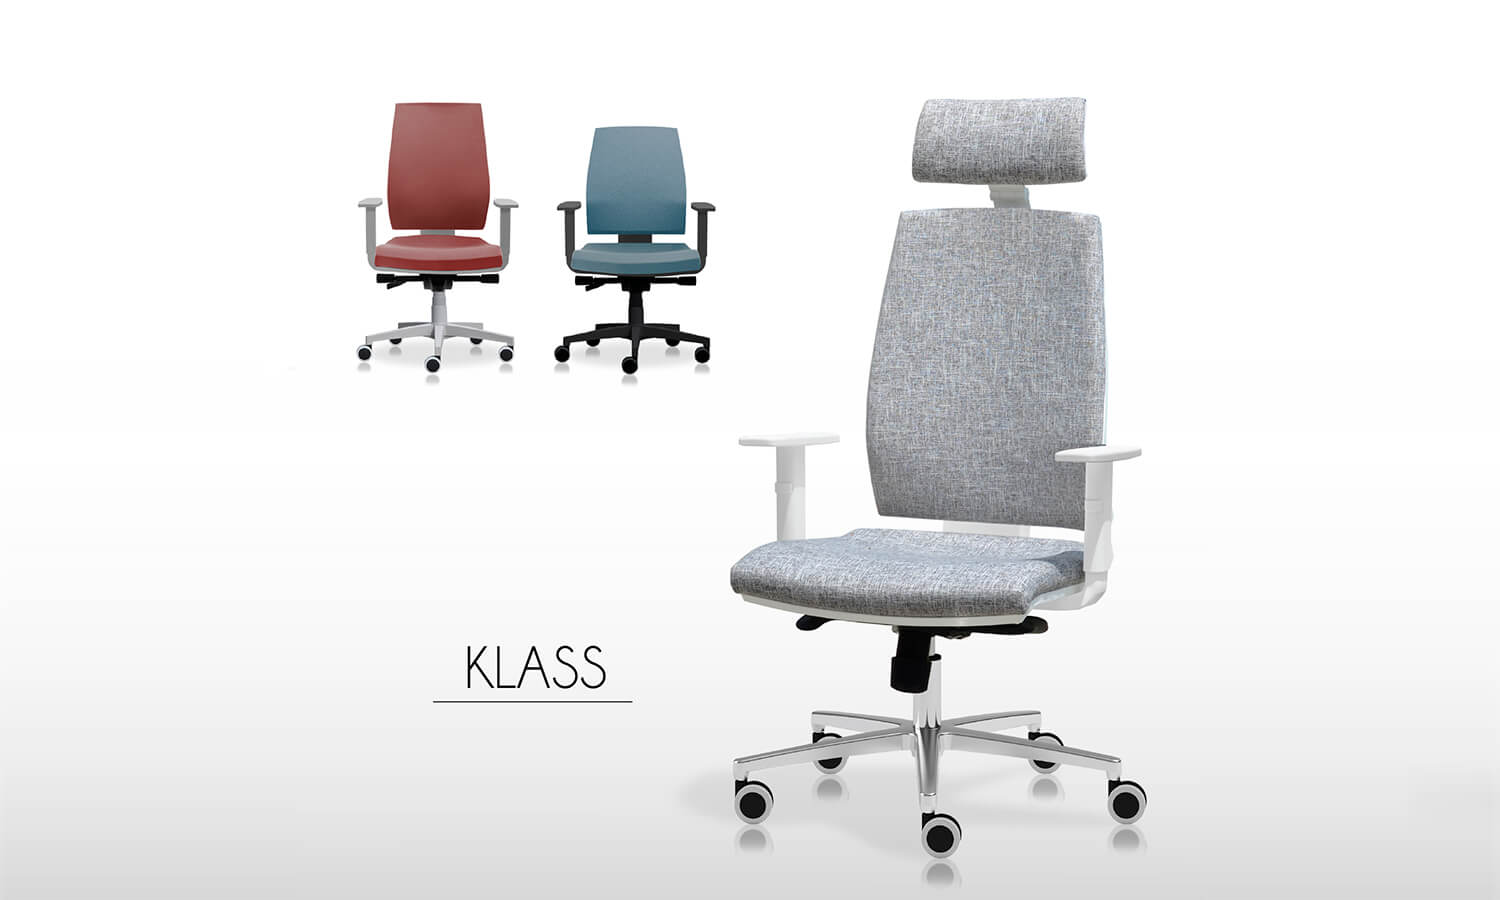 Sillas de escritorio cómodas - Linea Klass - Spazio Mobili